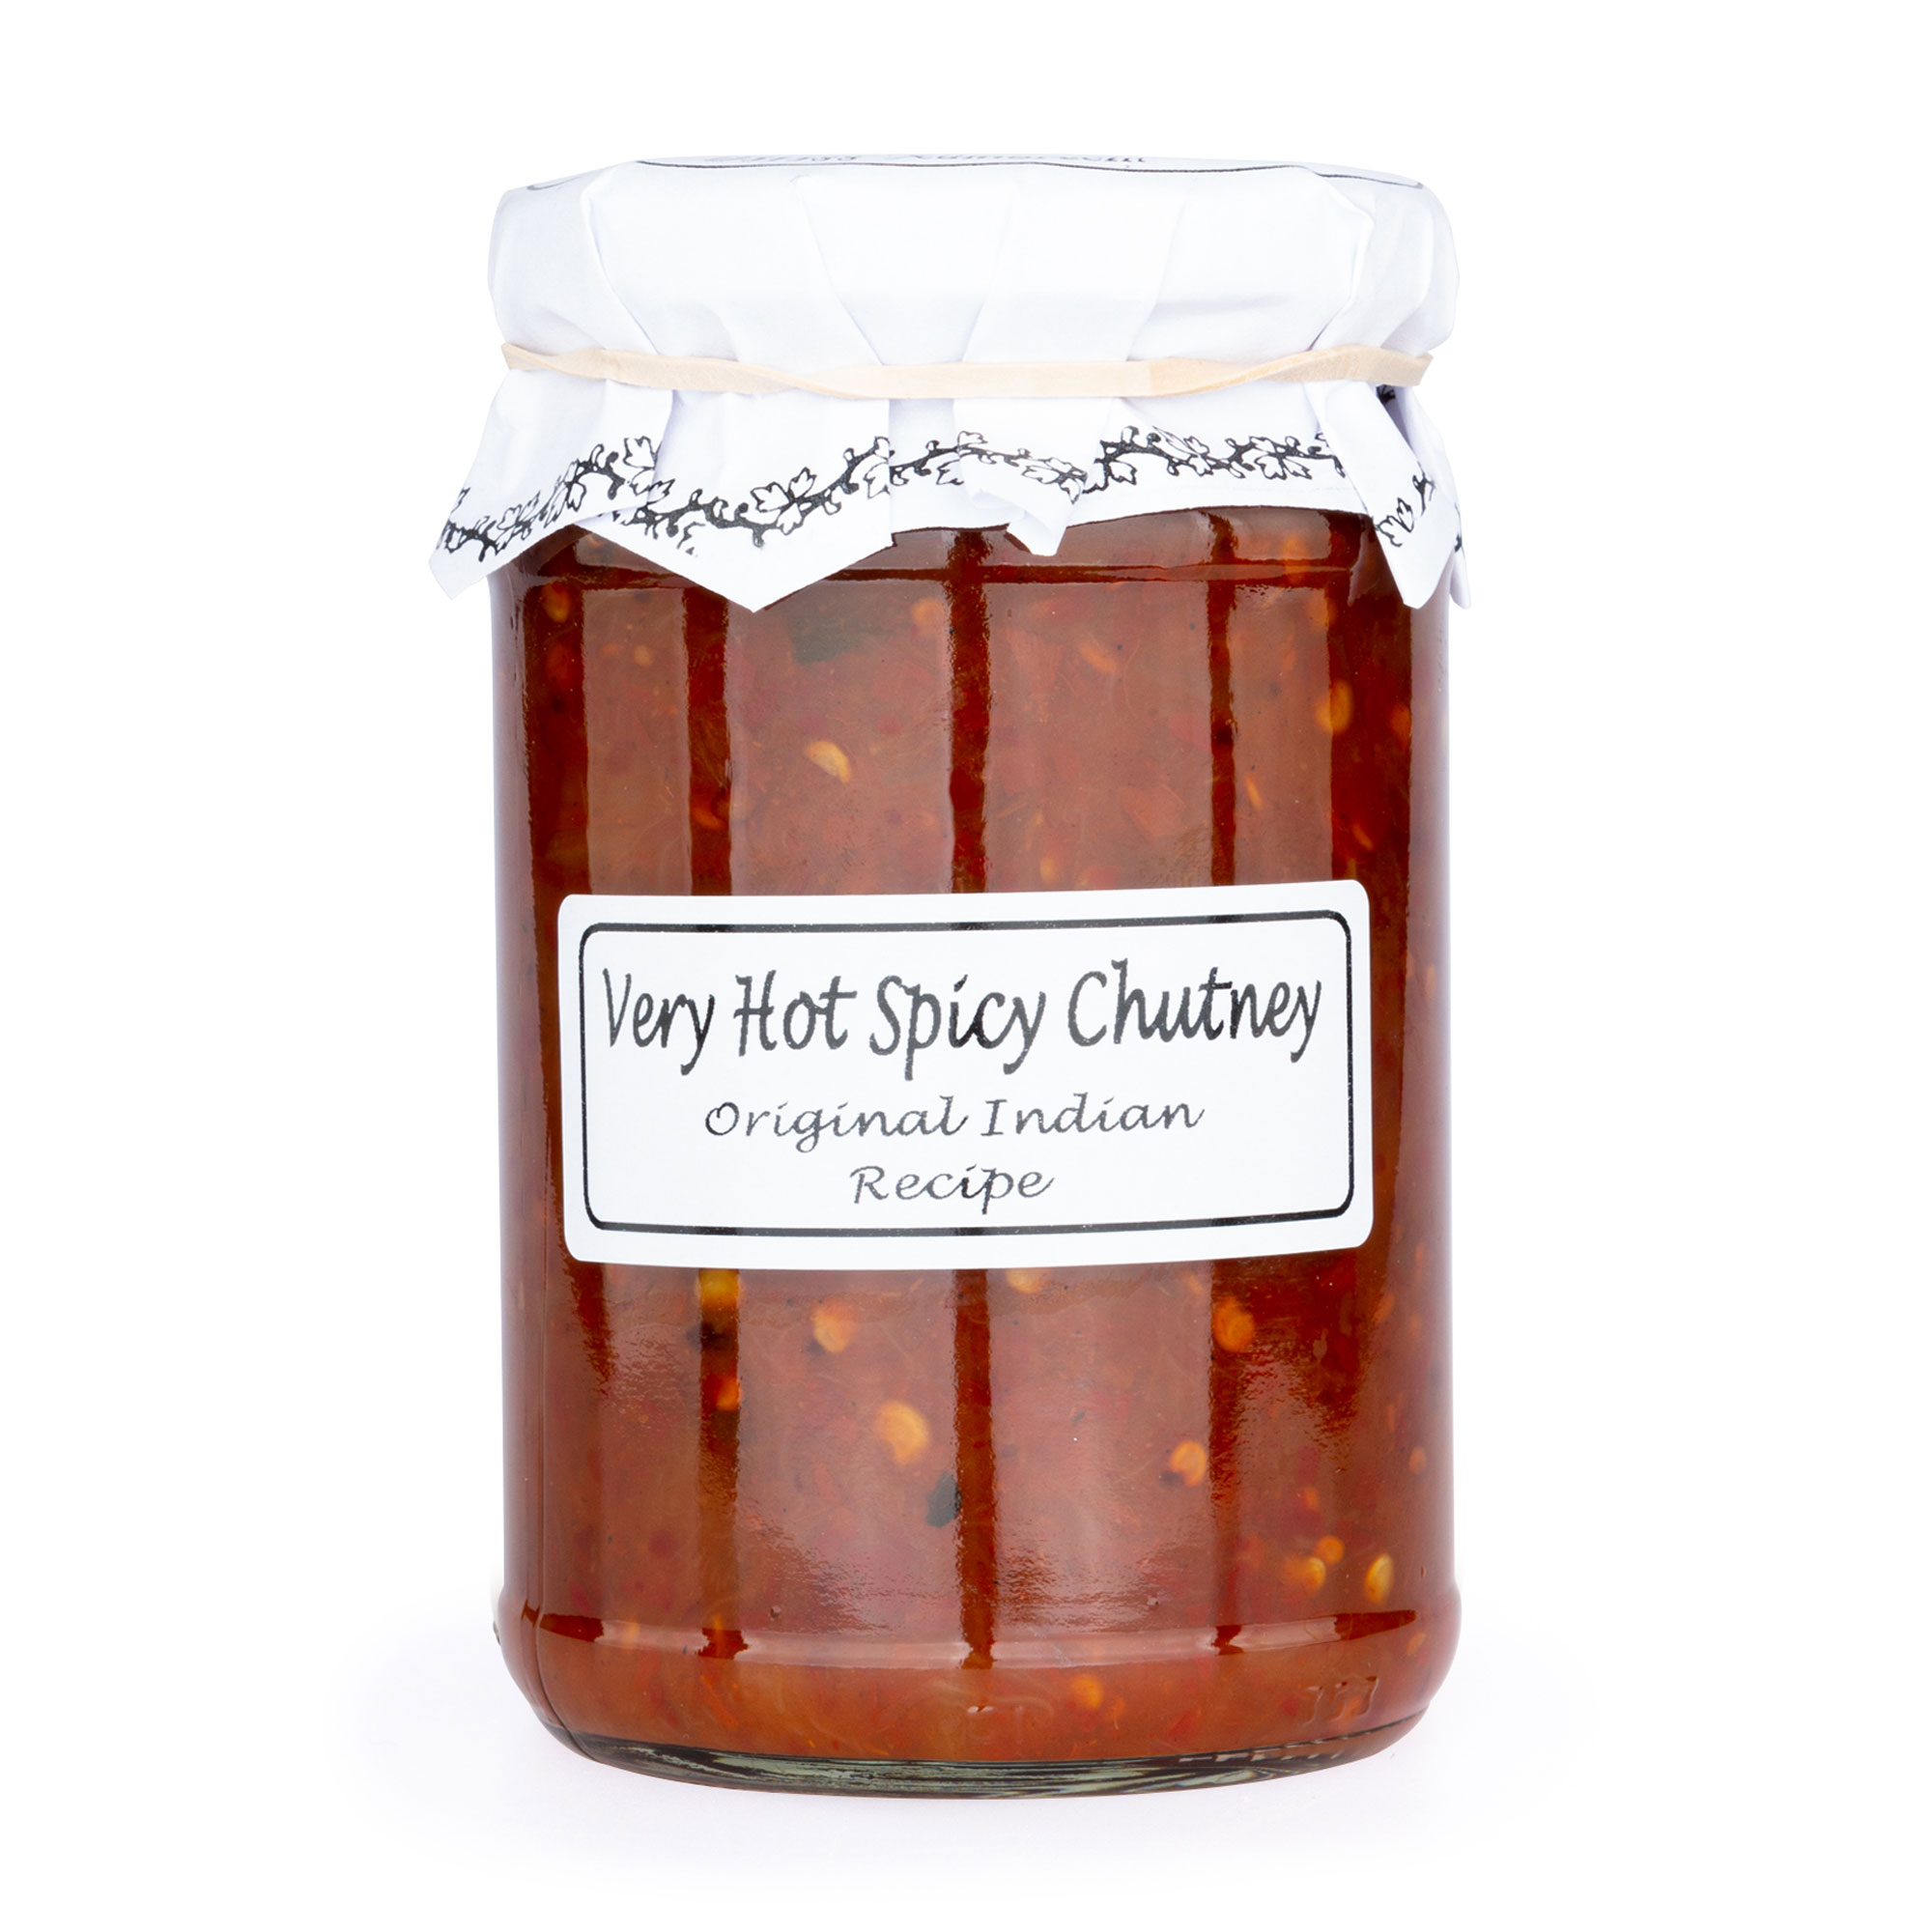 Very Hot Spicy Chutney, scharf-würzig